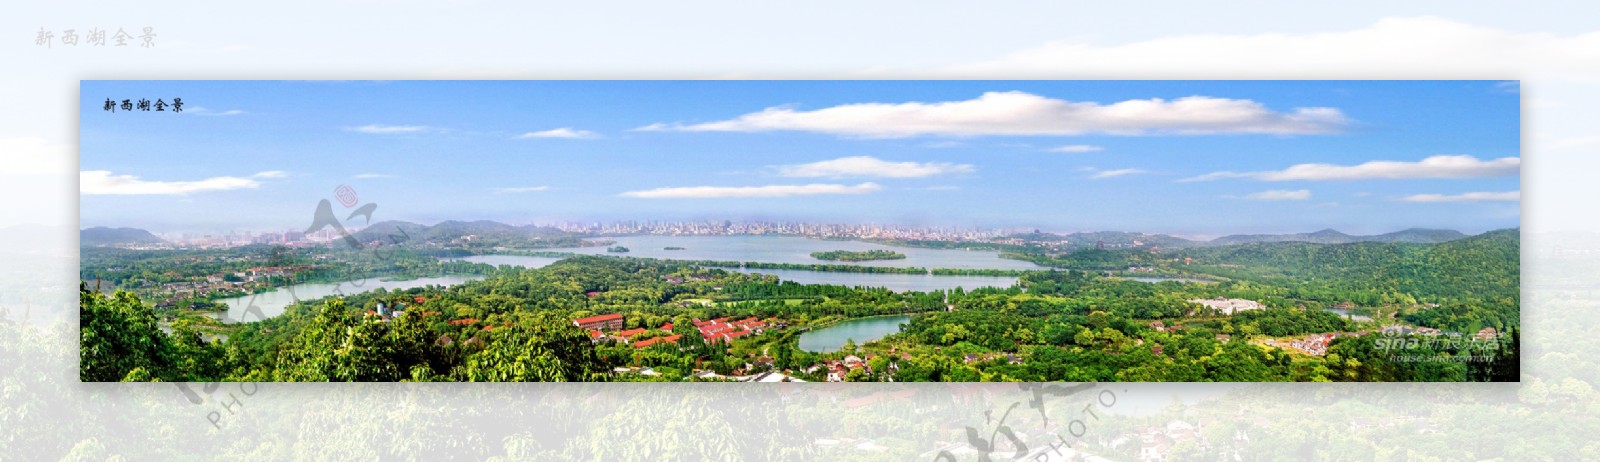 杭州西湖全景高清图